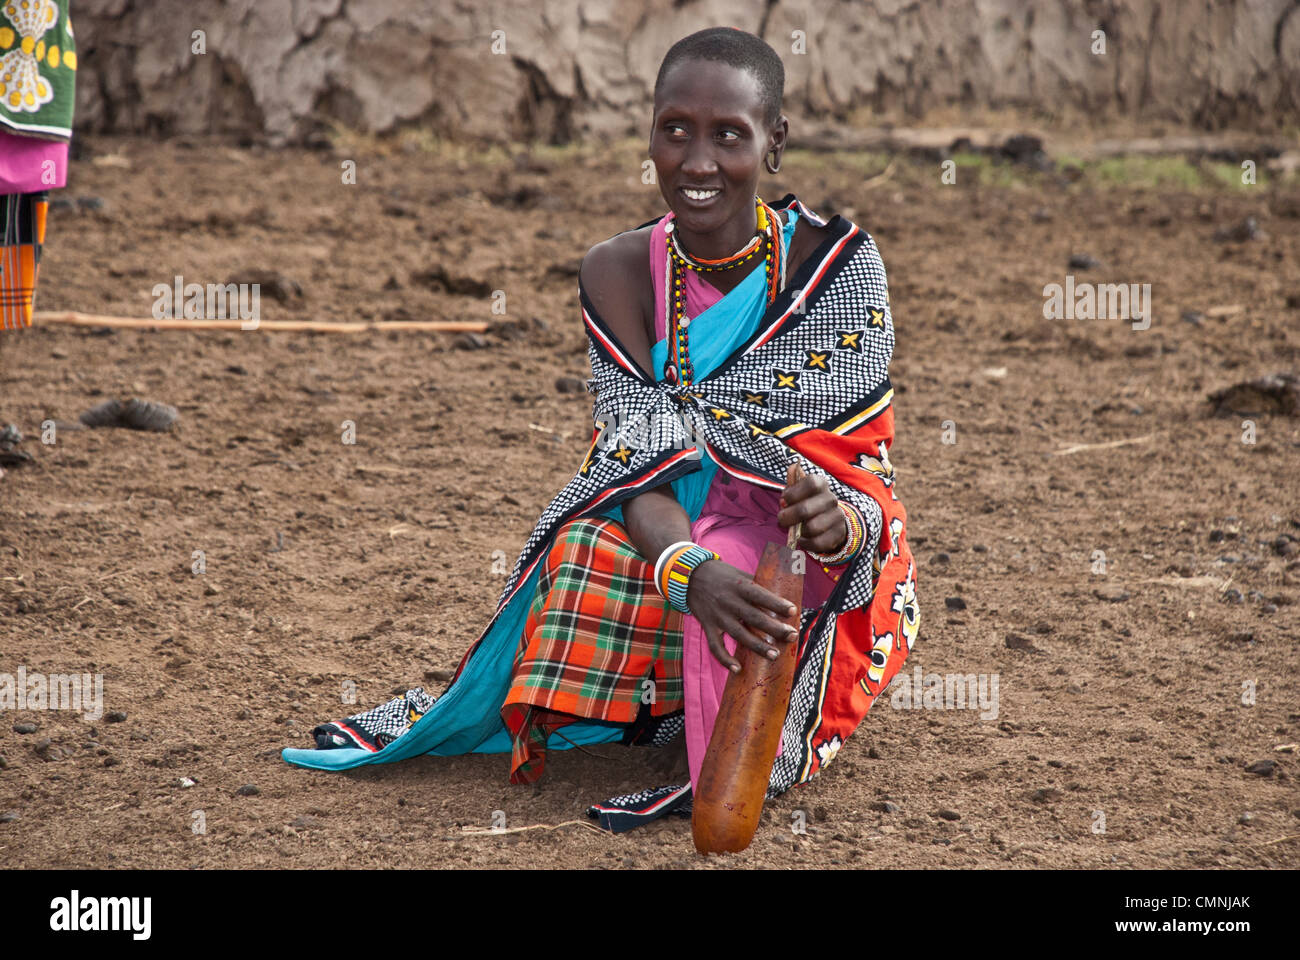 Masai donna, indossando variopinti abiti tradizionali, agitazione di una vacca di sangue in una zucca per rimuovere i grumi prima di essere consumato. Foto Stock